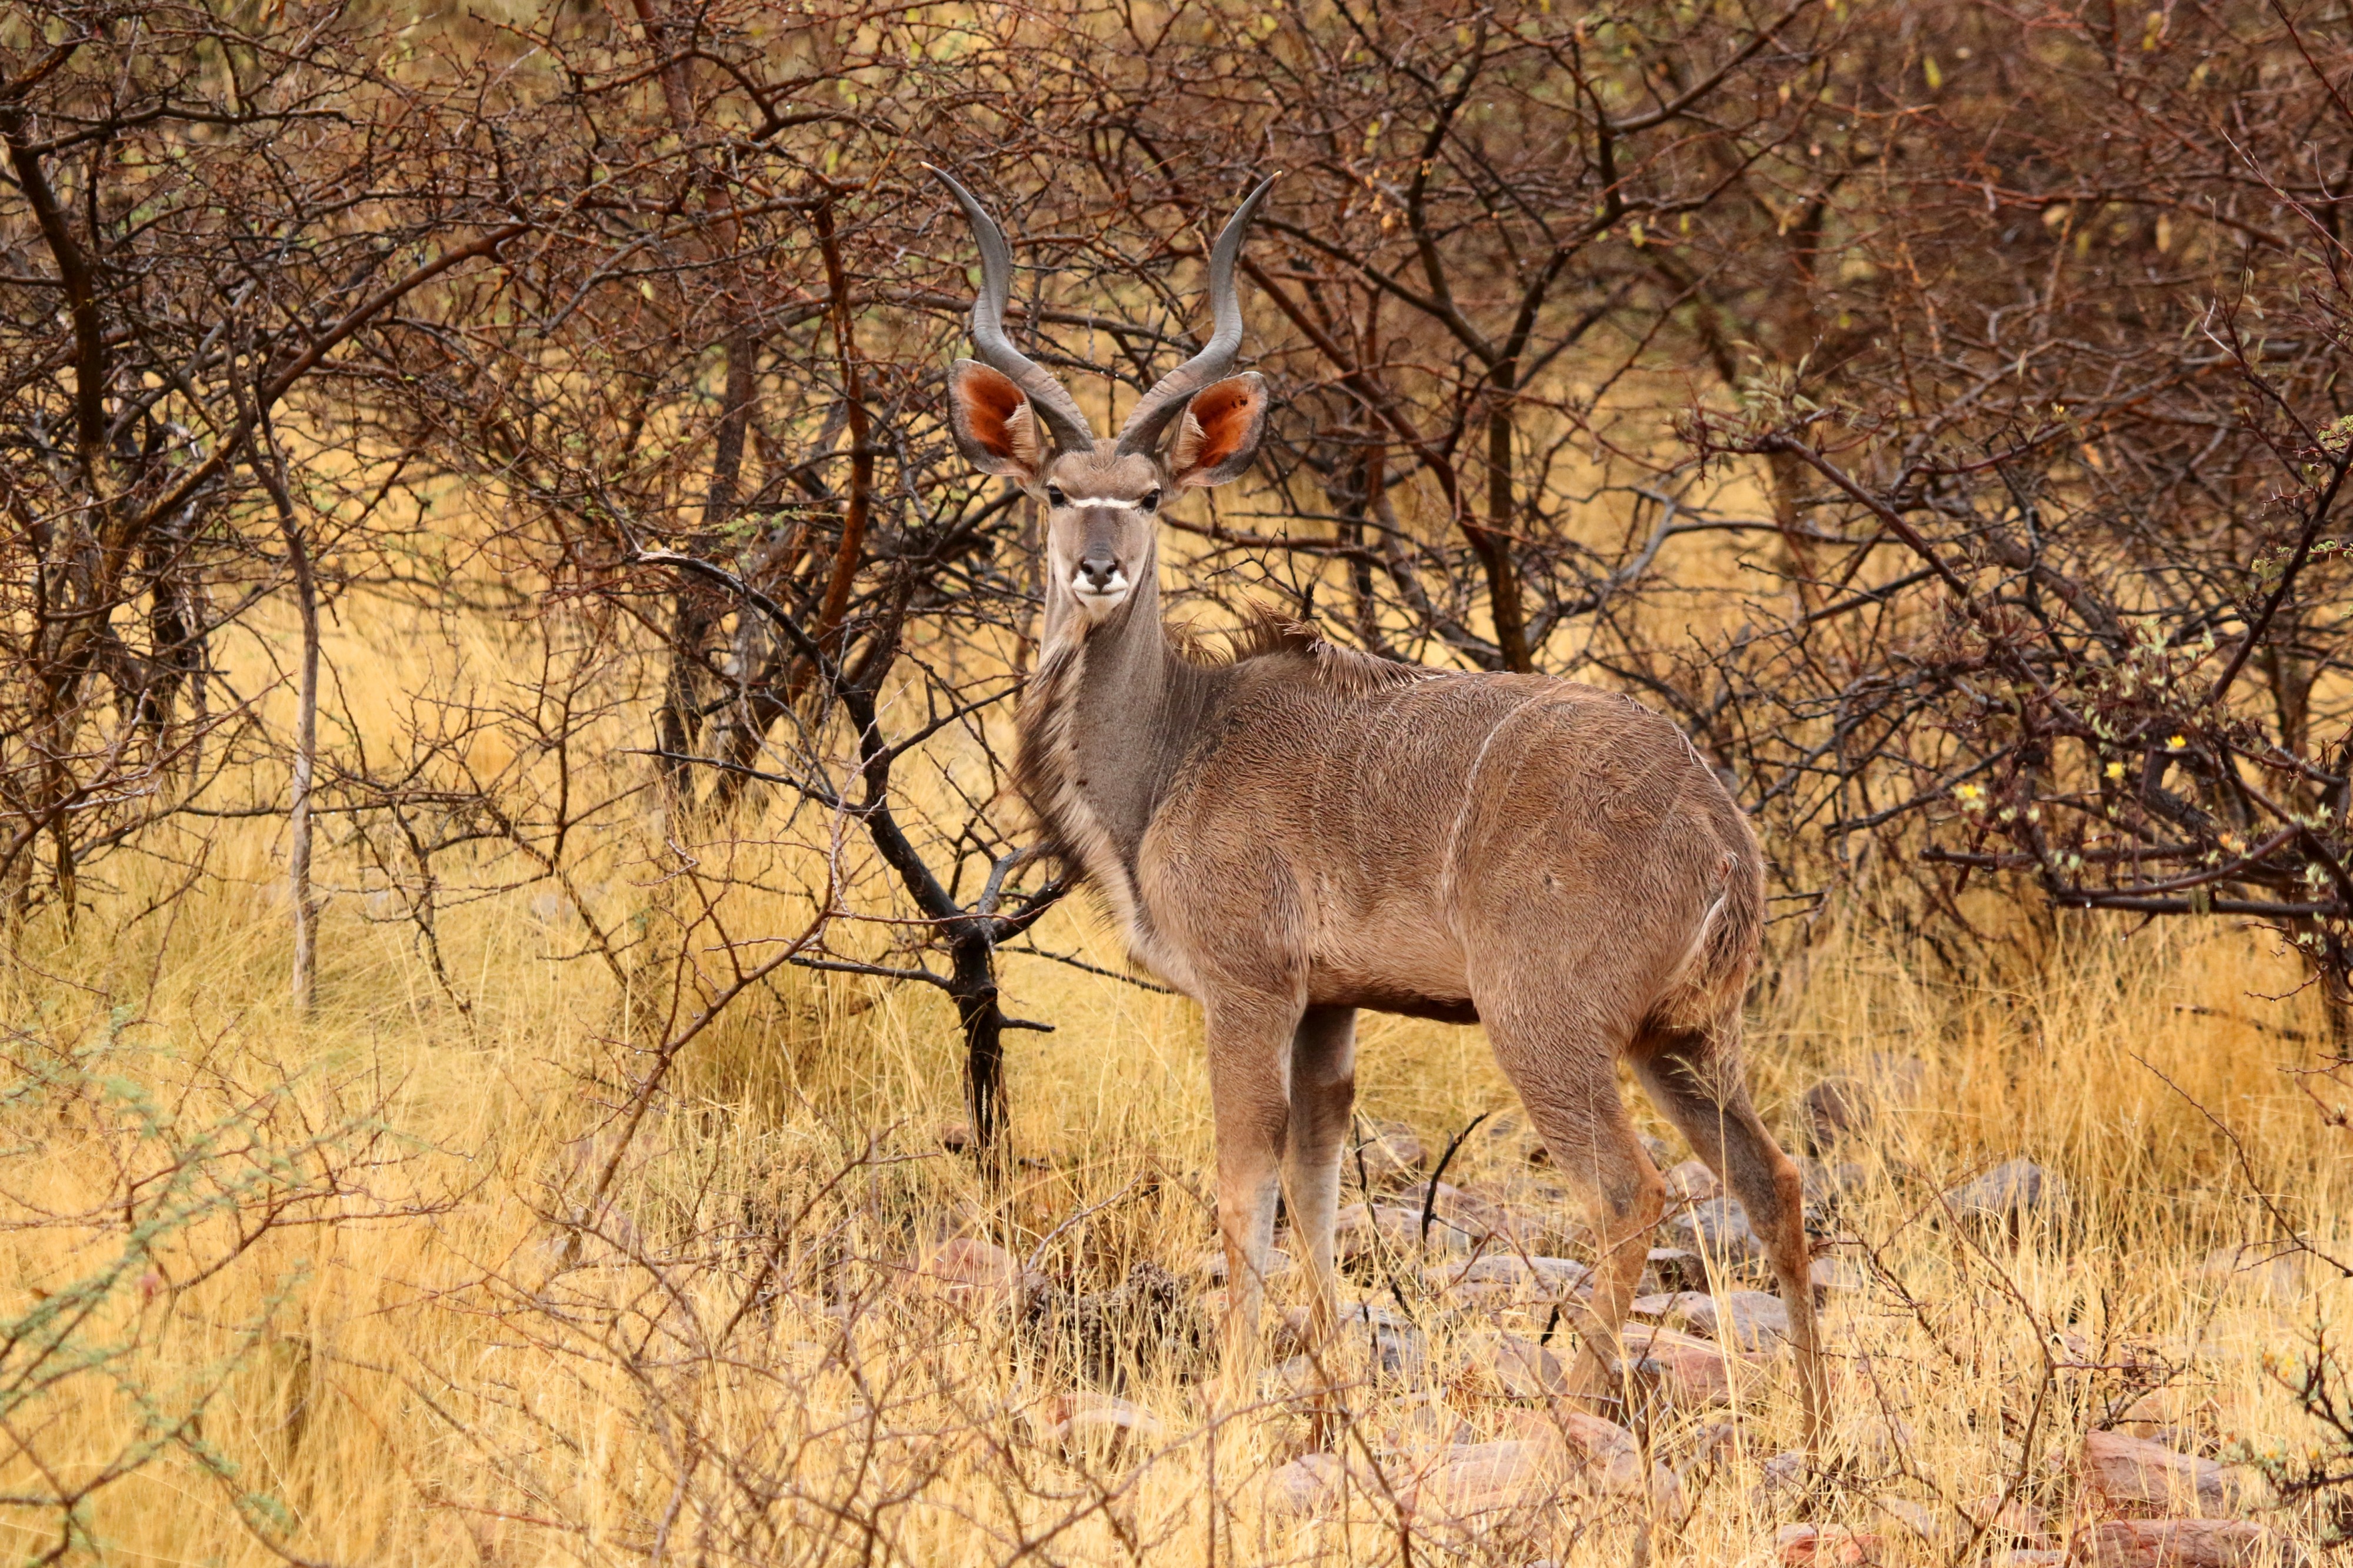 Greater kudu (Tragelaphus strepsiceros) male